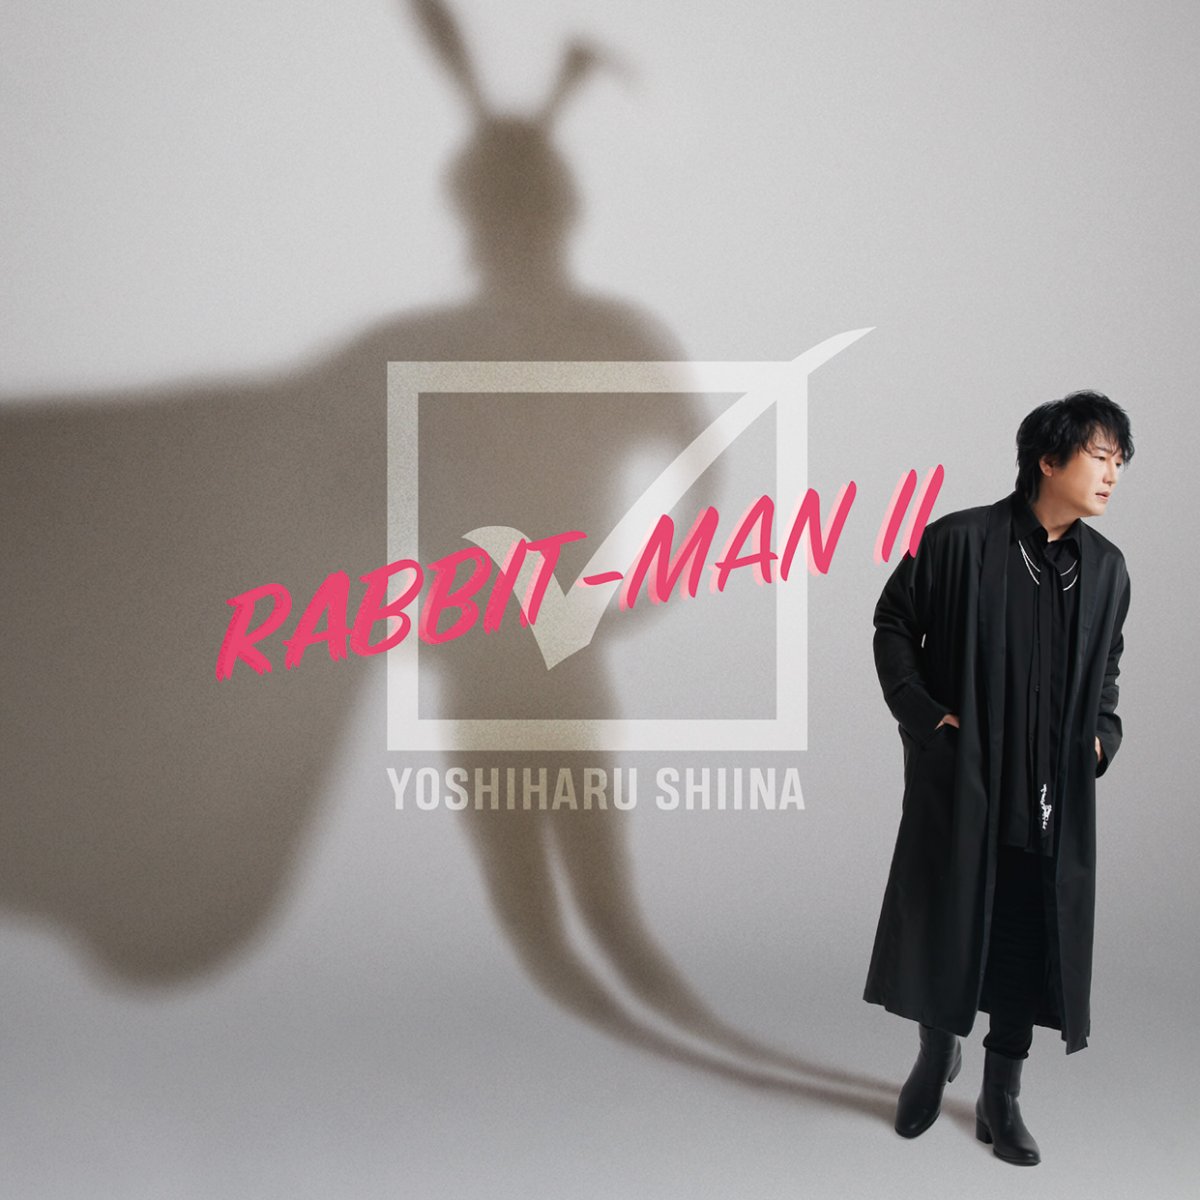 椎名慶治『RABBIT-MAN II』発売記念イベント